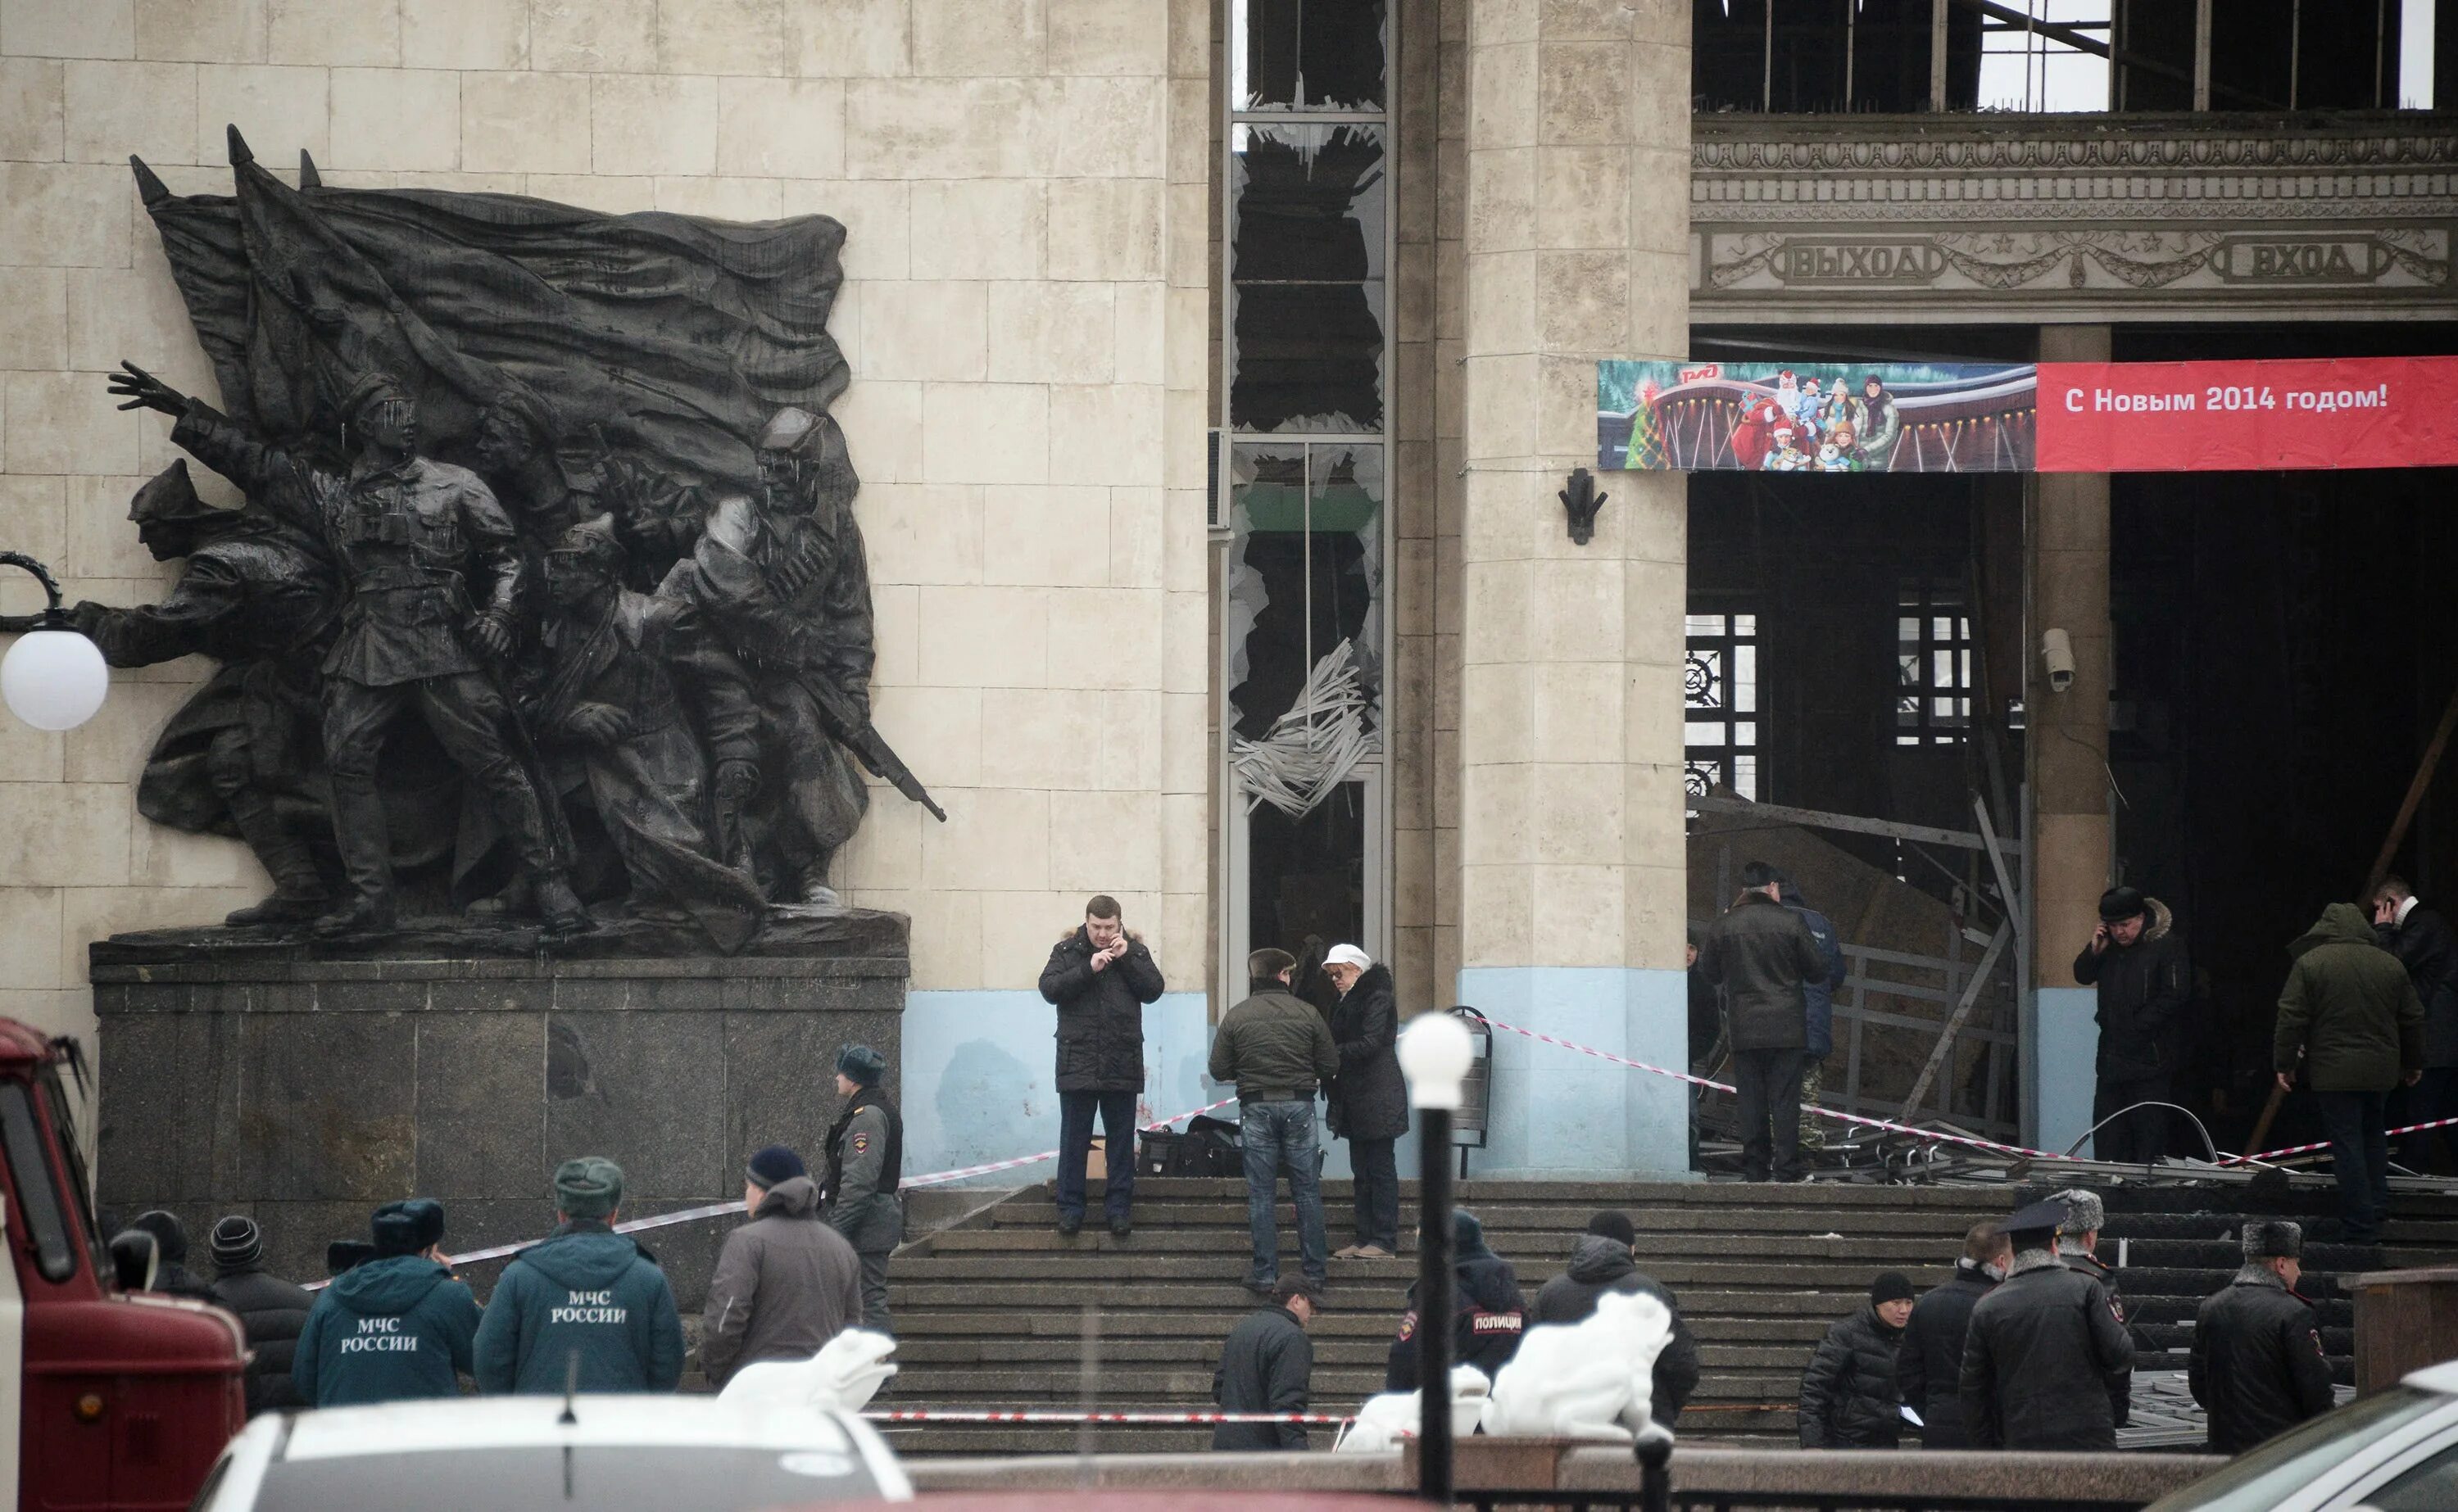 Теракт в Волгограде вокзал. Взрыв вокзала в Волгограде 2013. Волгоград 1 Железнодорожный вокзал взрыв. 29 Декабря 2013 года теракт в Волгограде. Теракты которые устроили русские